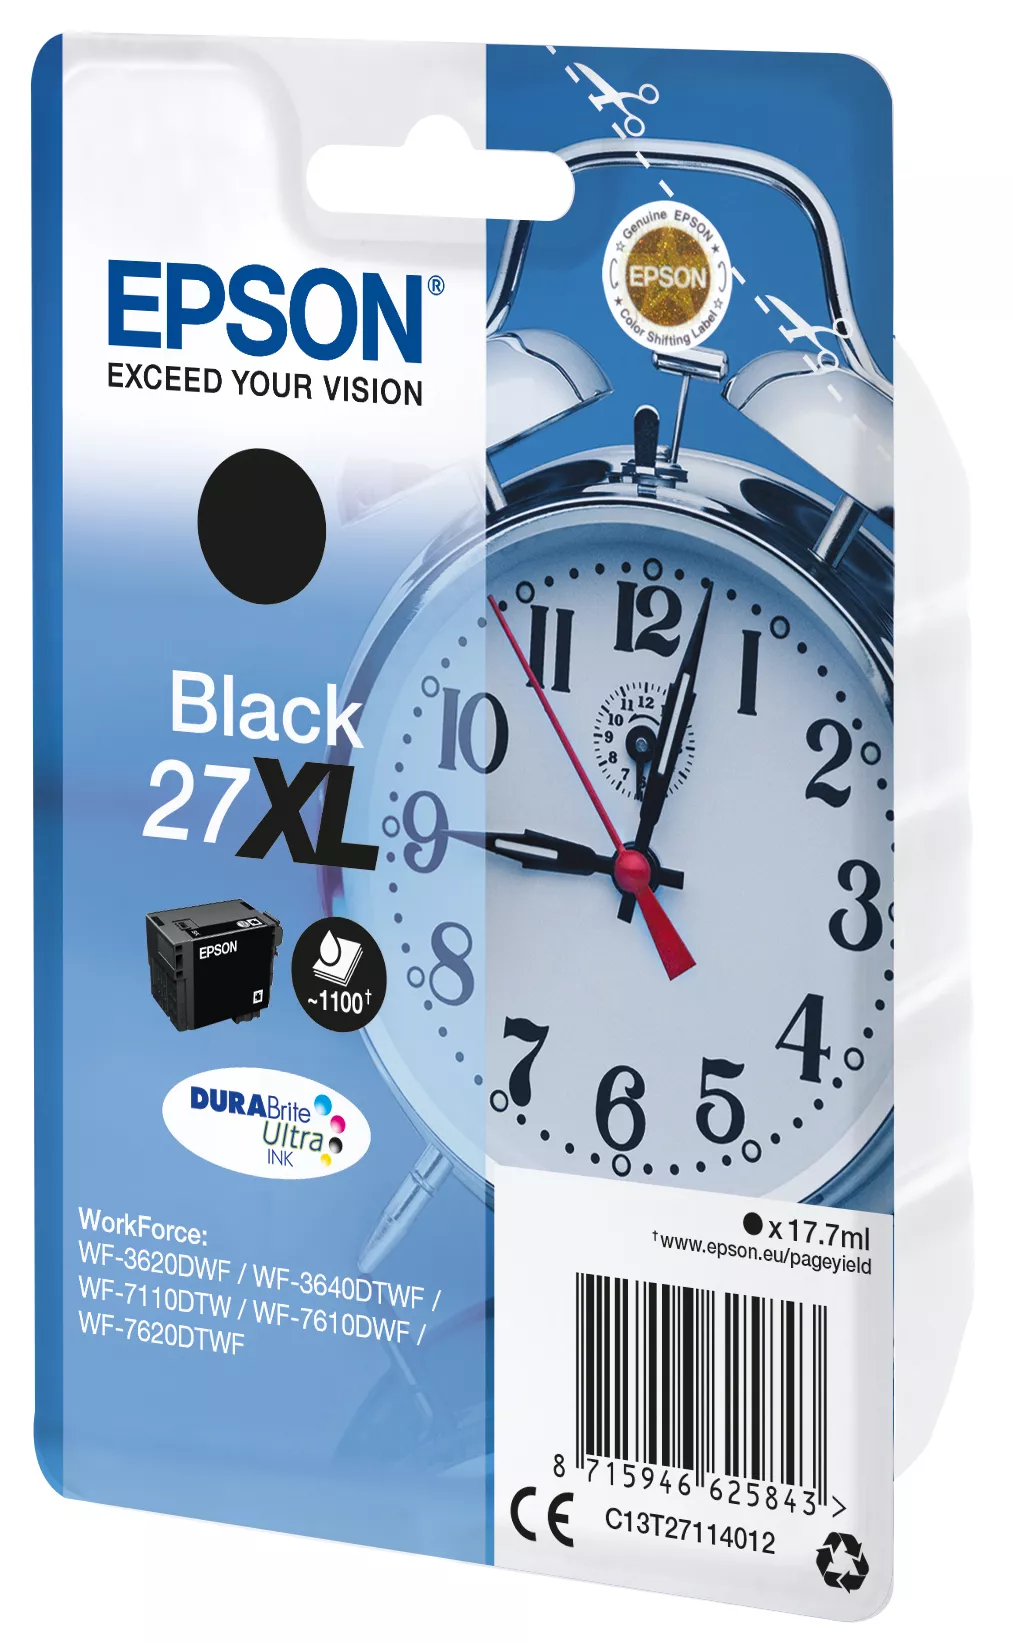 Vente EPSON 27XL cartouche d encre noir haute capacité Epson au meilleur prix - visuel 2